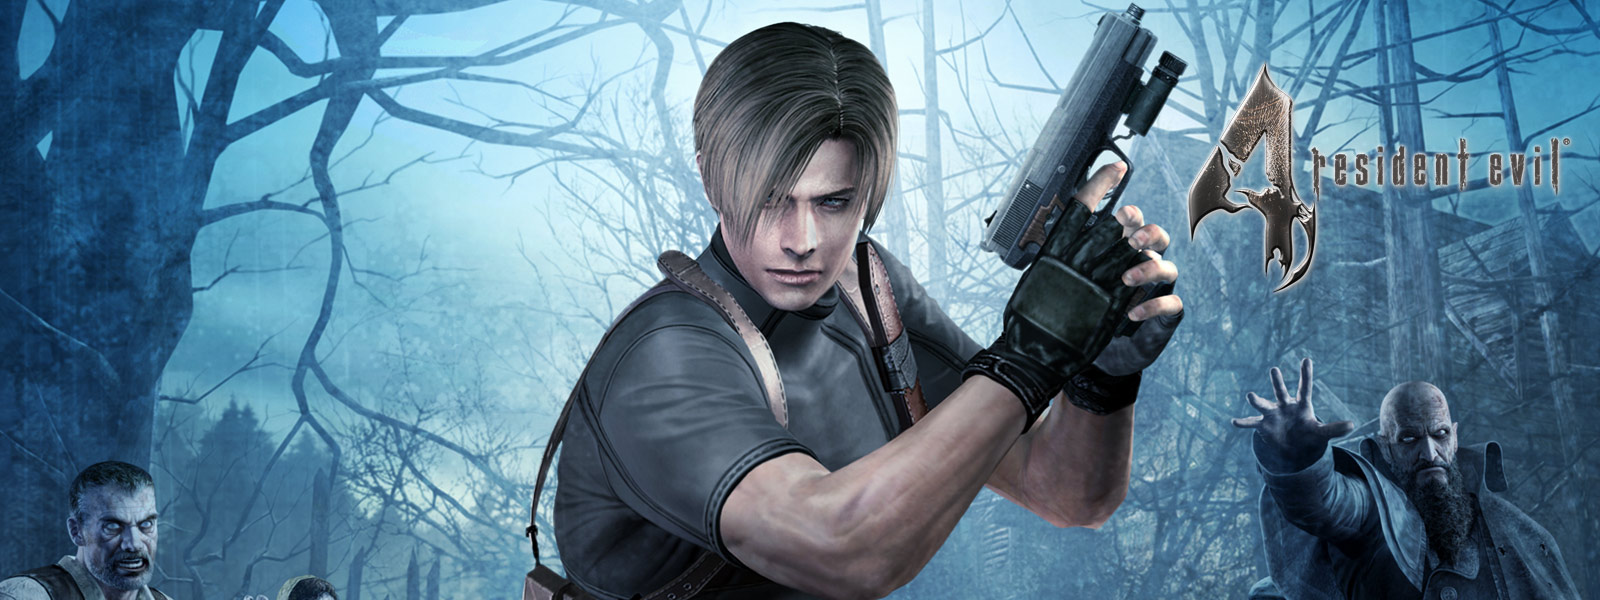 Resident Evil 4, postava držící pistoli v tmavém lese obklopeném zombie